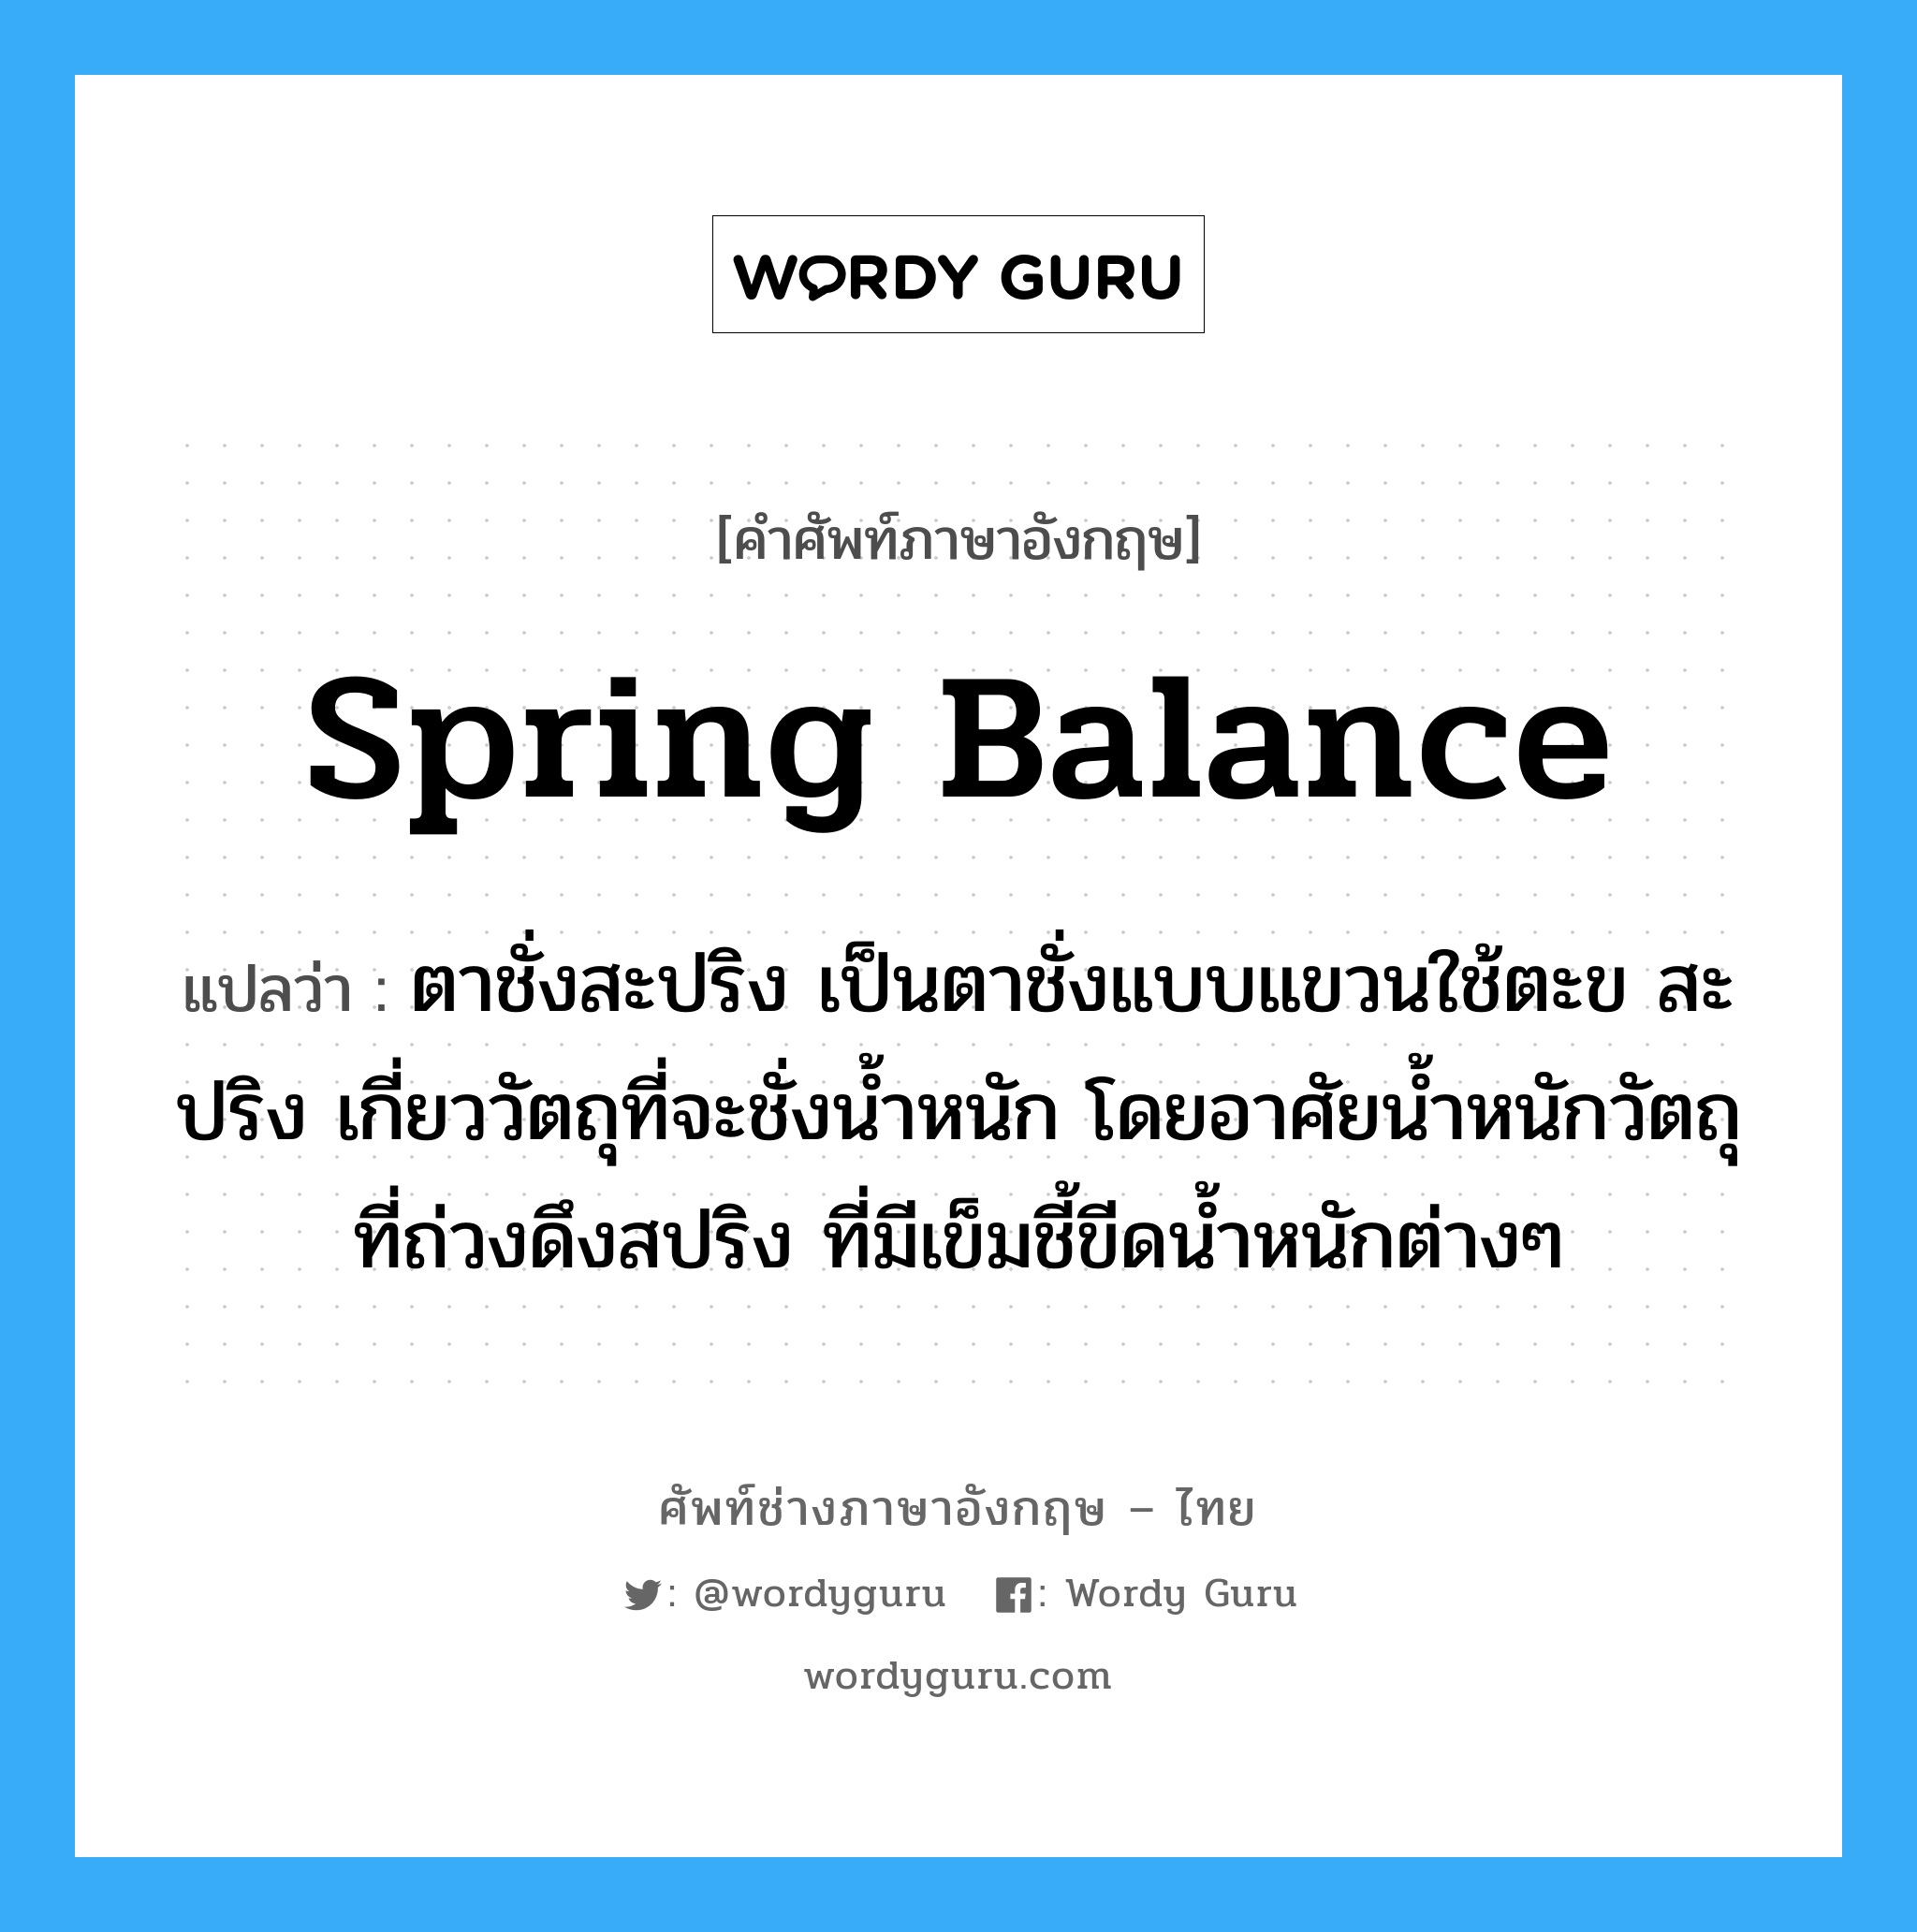 spring balance แปลว่า?, คำศัพท์ช่างภาษาอังกฤษ - ไทย spring balance คำศัพท์ภาษาอังกฤษ spring balance แปลว่า ตาชั่งสะปริง เป็นตาชั่งแบบแขวนใช้ตะข สะปริง เกี่ยววัตถุที่จะชั่งน้ำหนัก โดยอาศัยน้ำหนักวัตถุที่ถ่วงดึงสปริง ที่มีเข็มชี้ขีดน้ำหนักต่างๆ